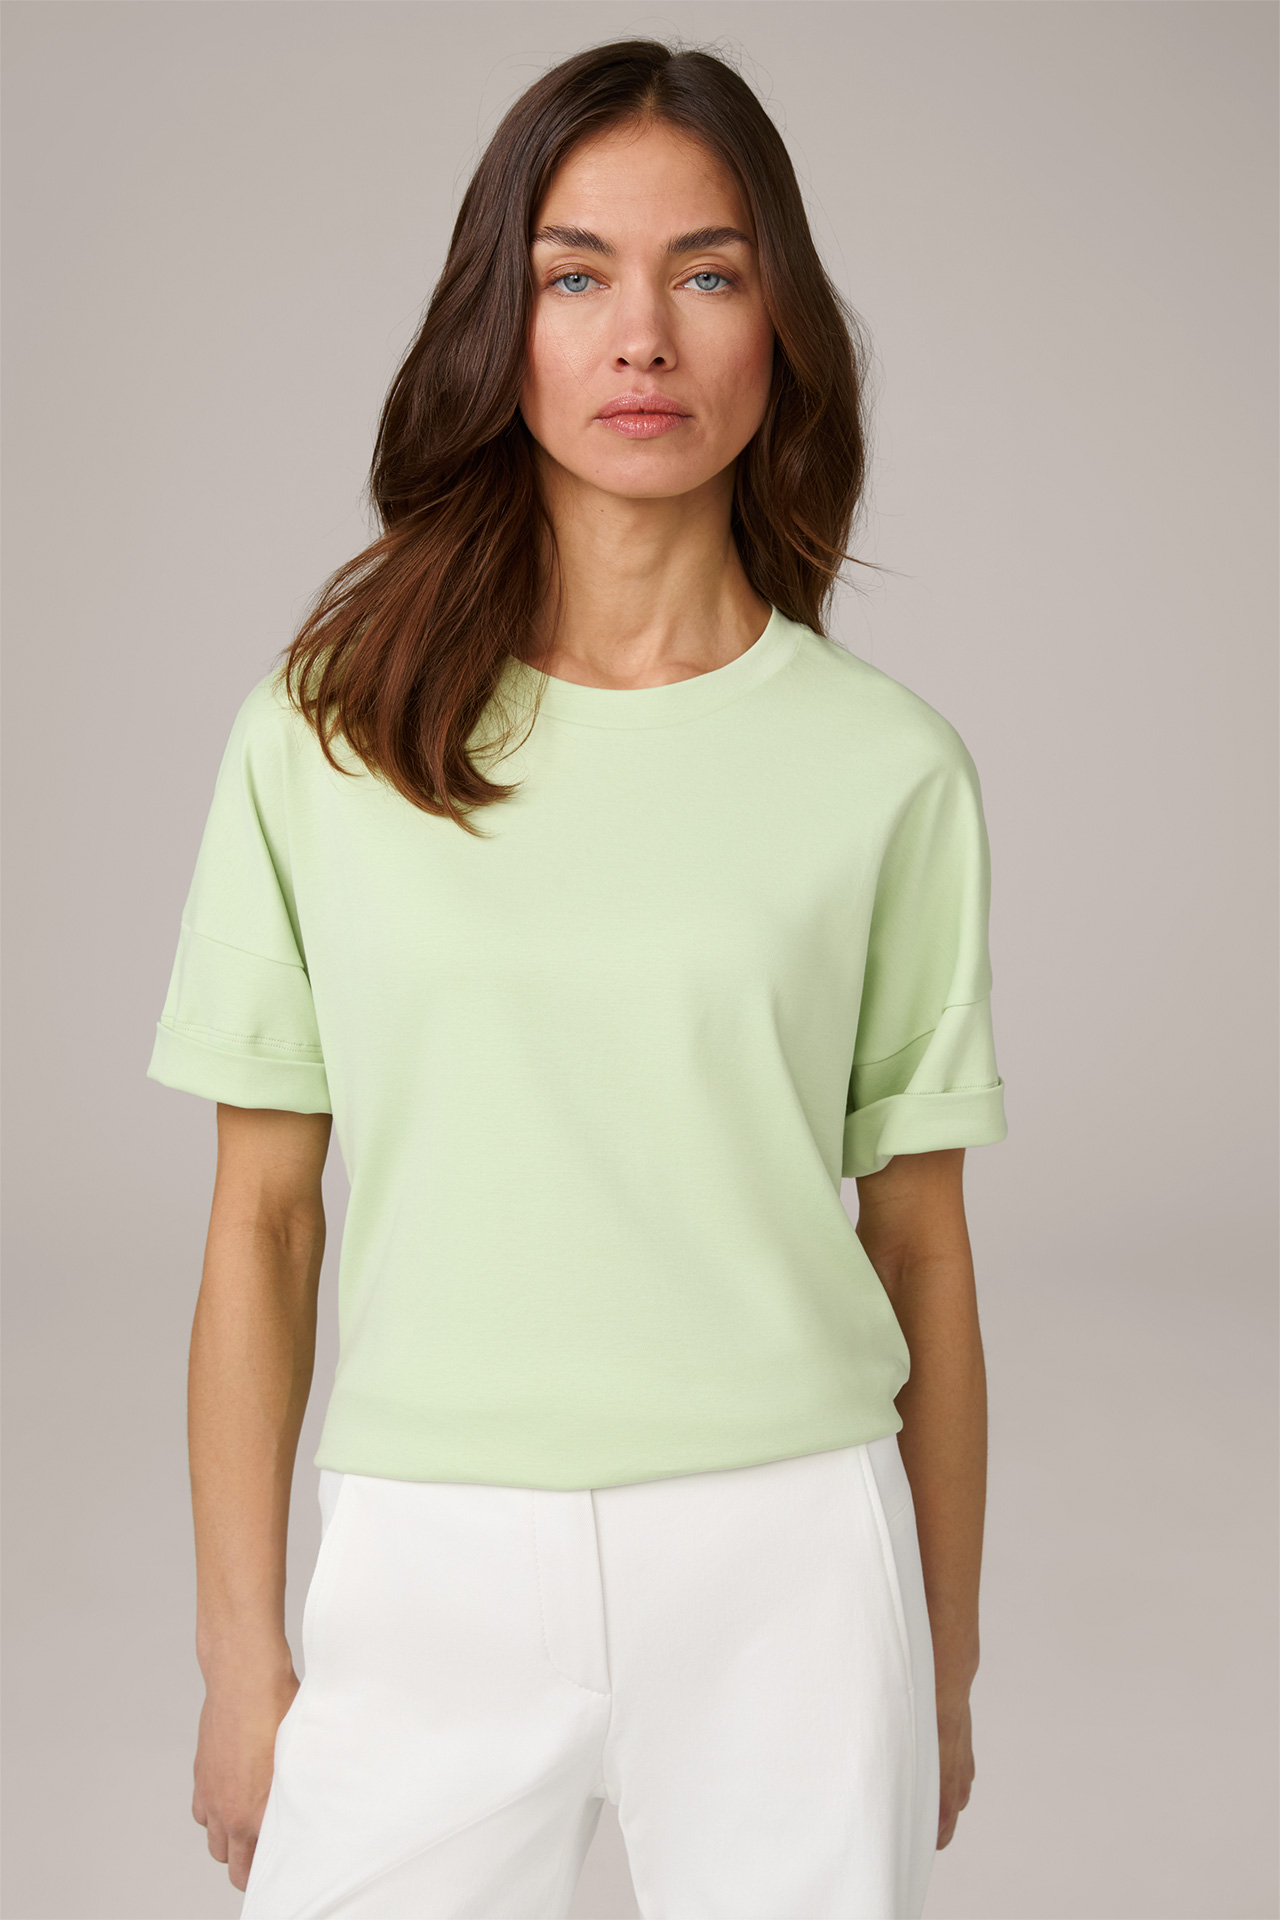 T-shirt en coton interlock à manches courtes, en vert clair